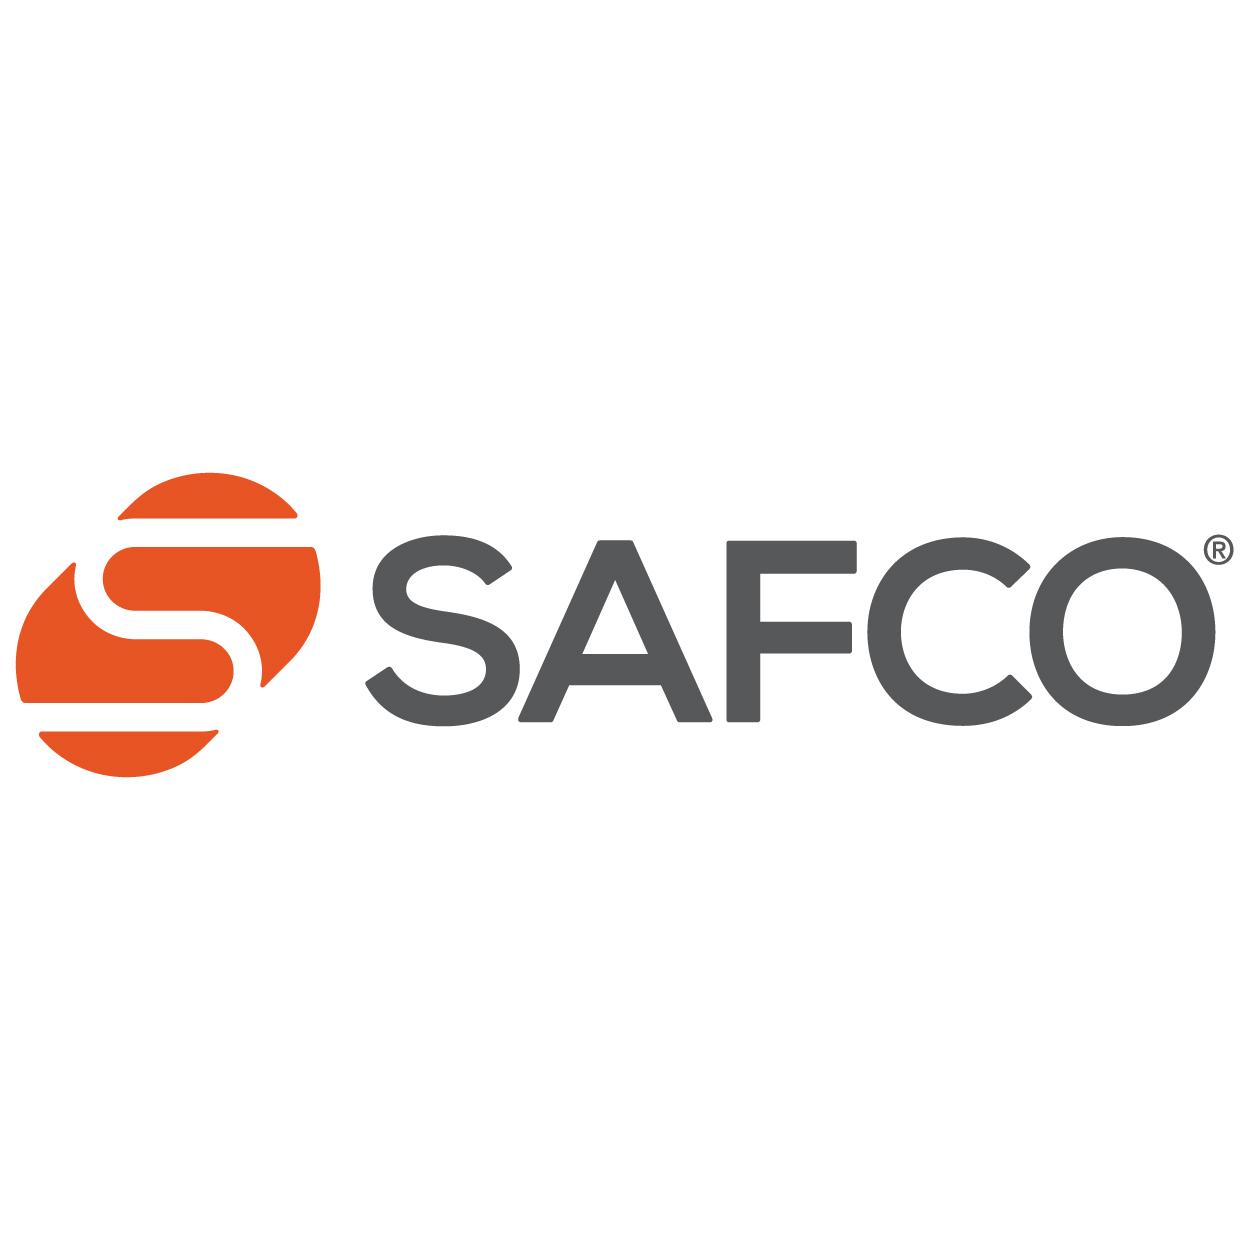 Safco Brand Logo